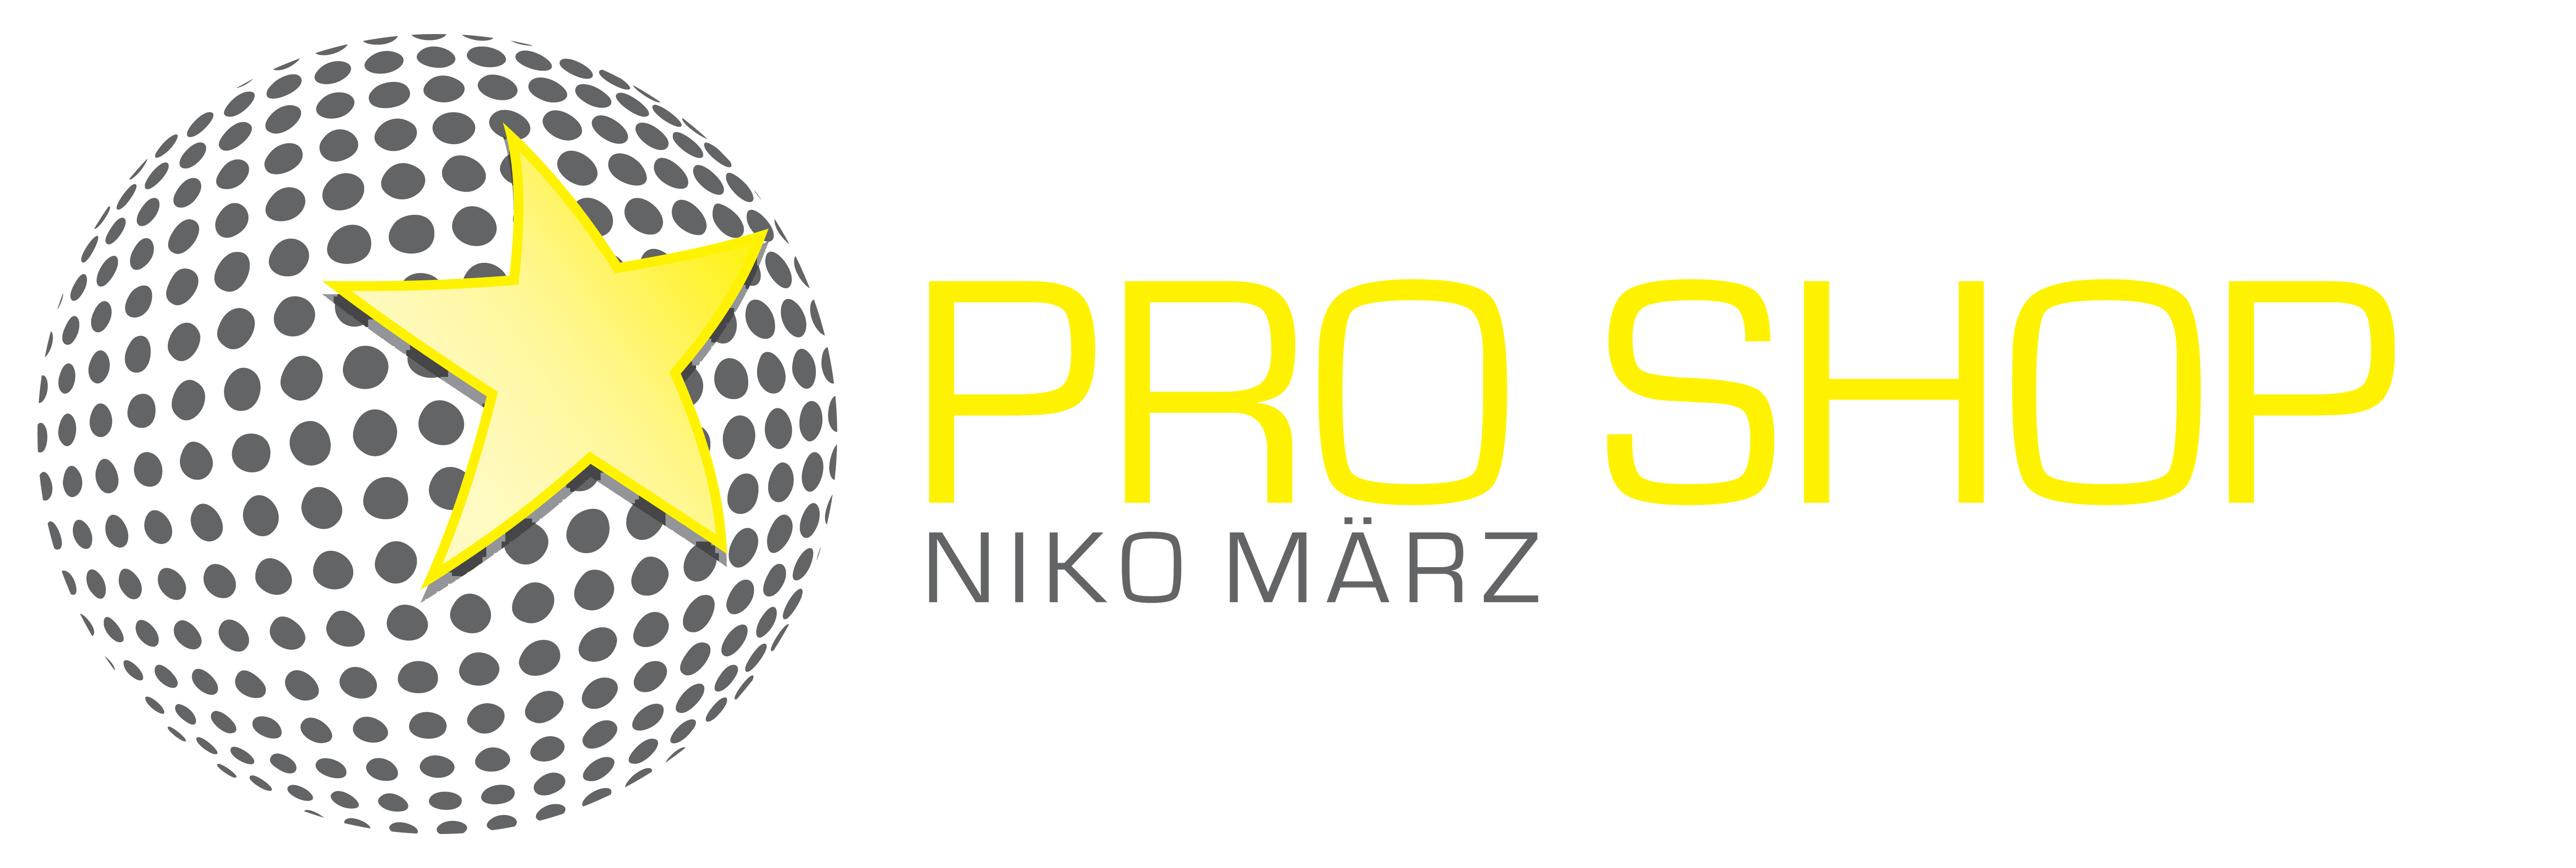 Pro Shop Niko März